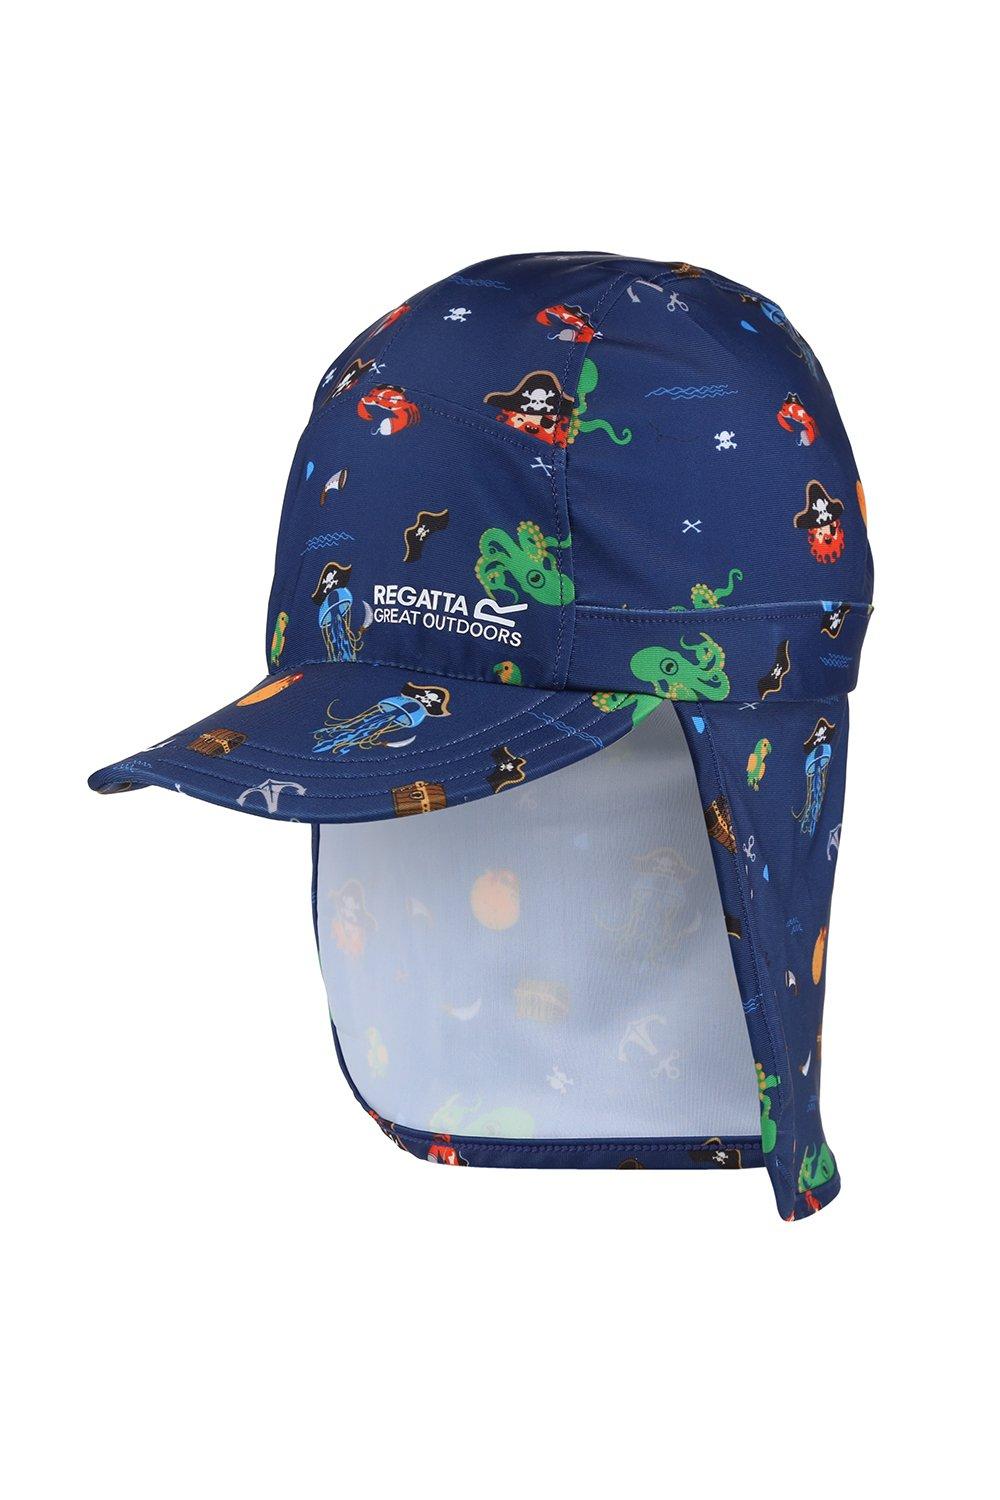 Защитная шапочка для шеи с солнцезащитным козырьком «Protect» Regatta, синий